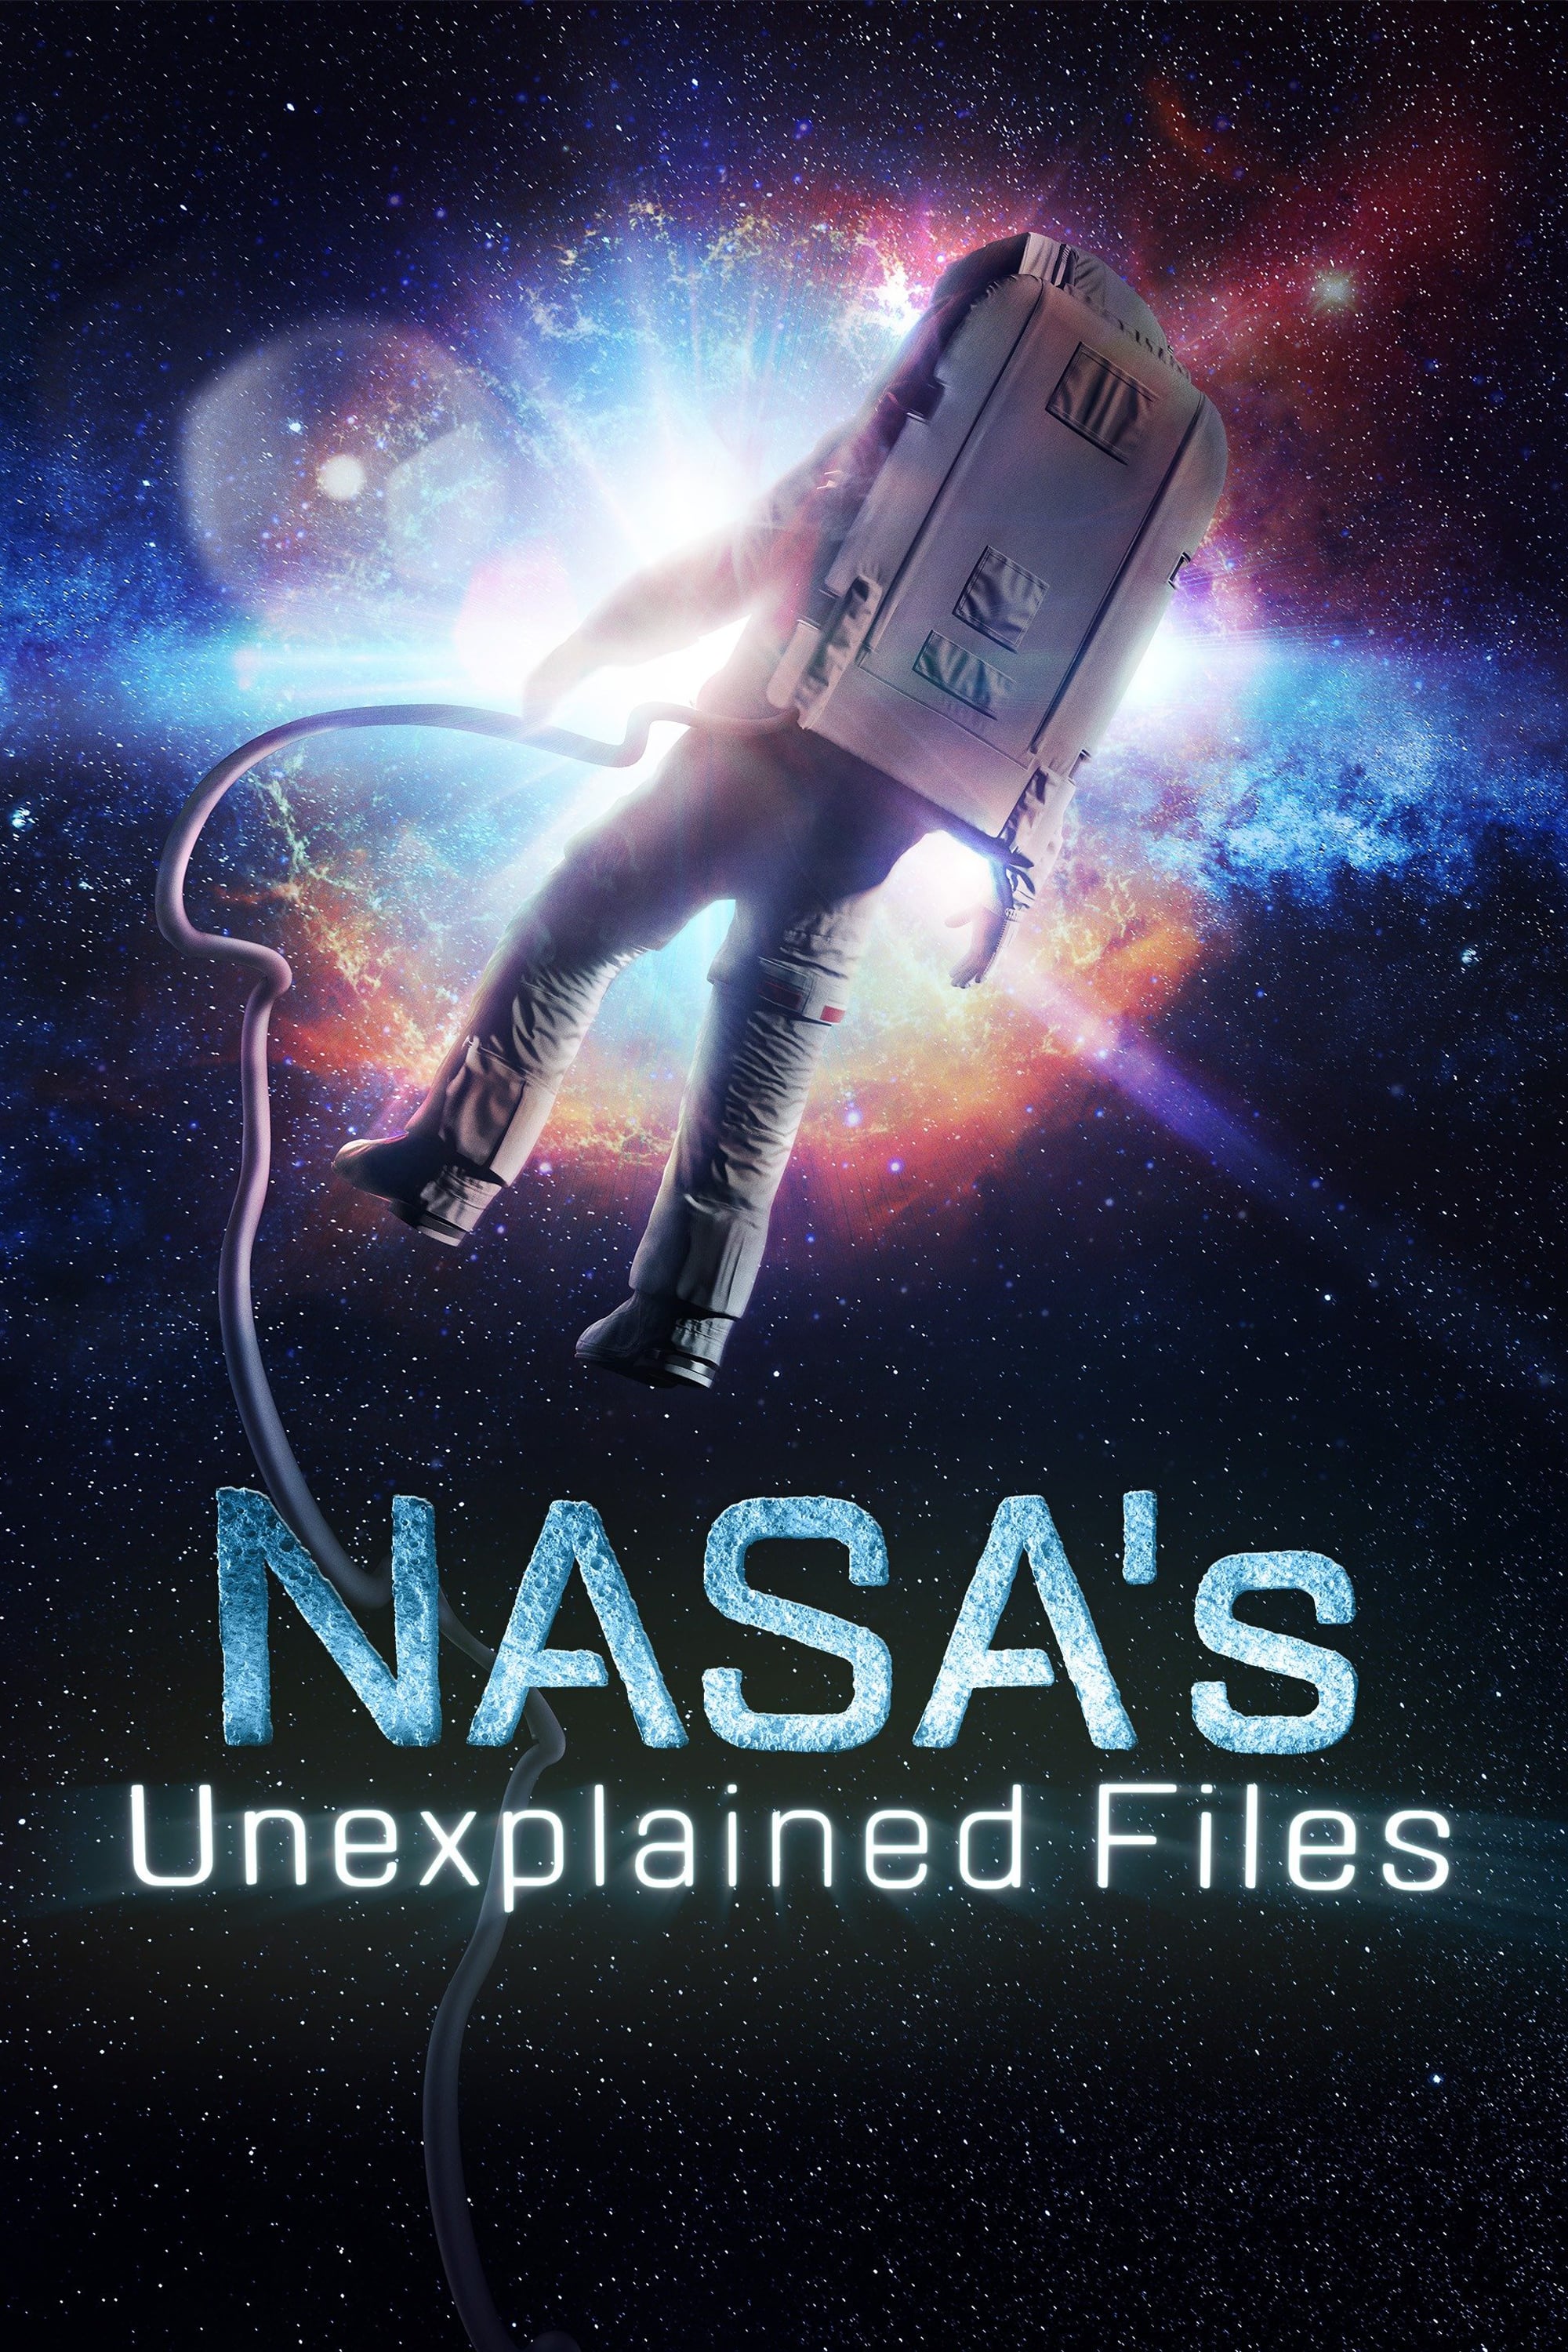 Caratula de NASA's Unexplained Files (NASA archivos desclasificados) 